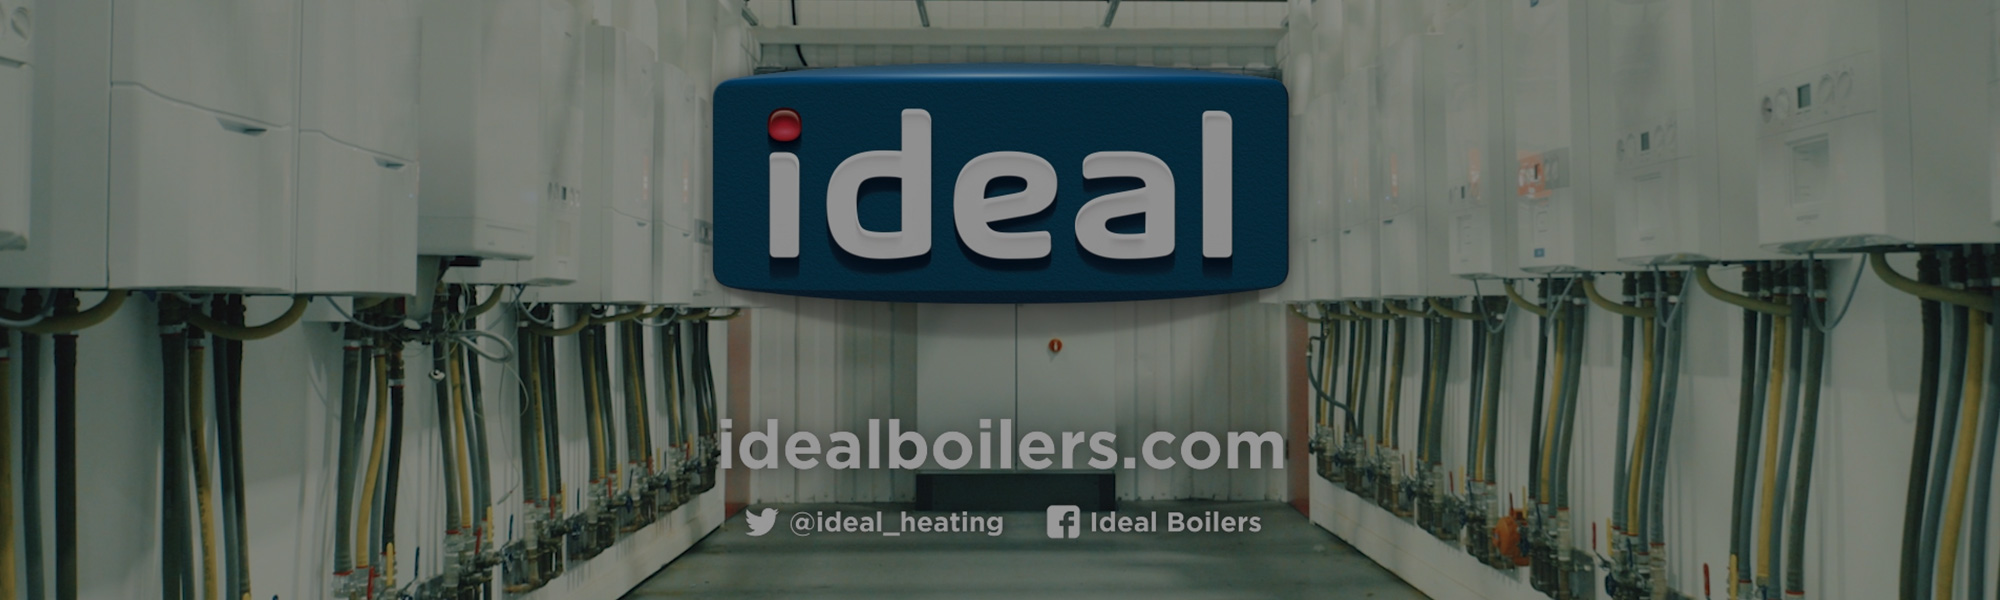 Ideal Boilers R&D Film